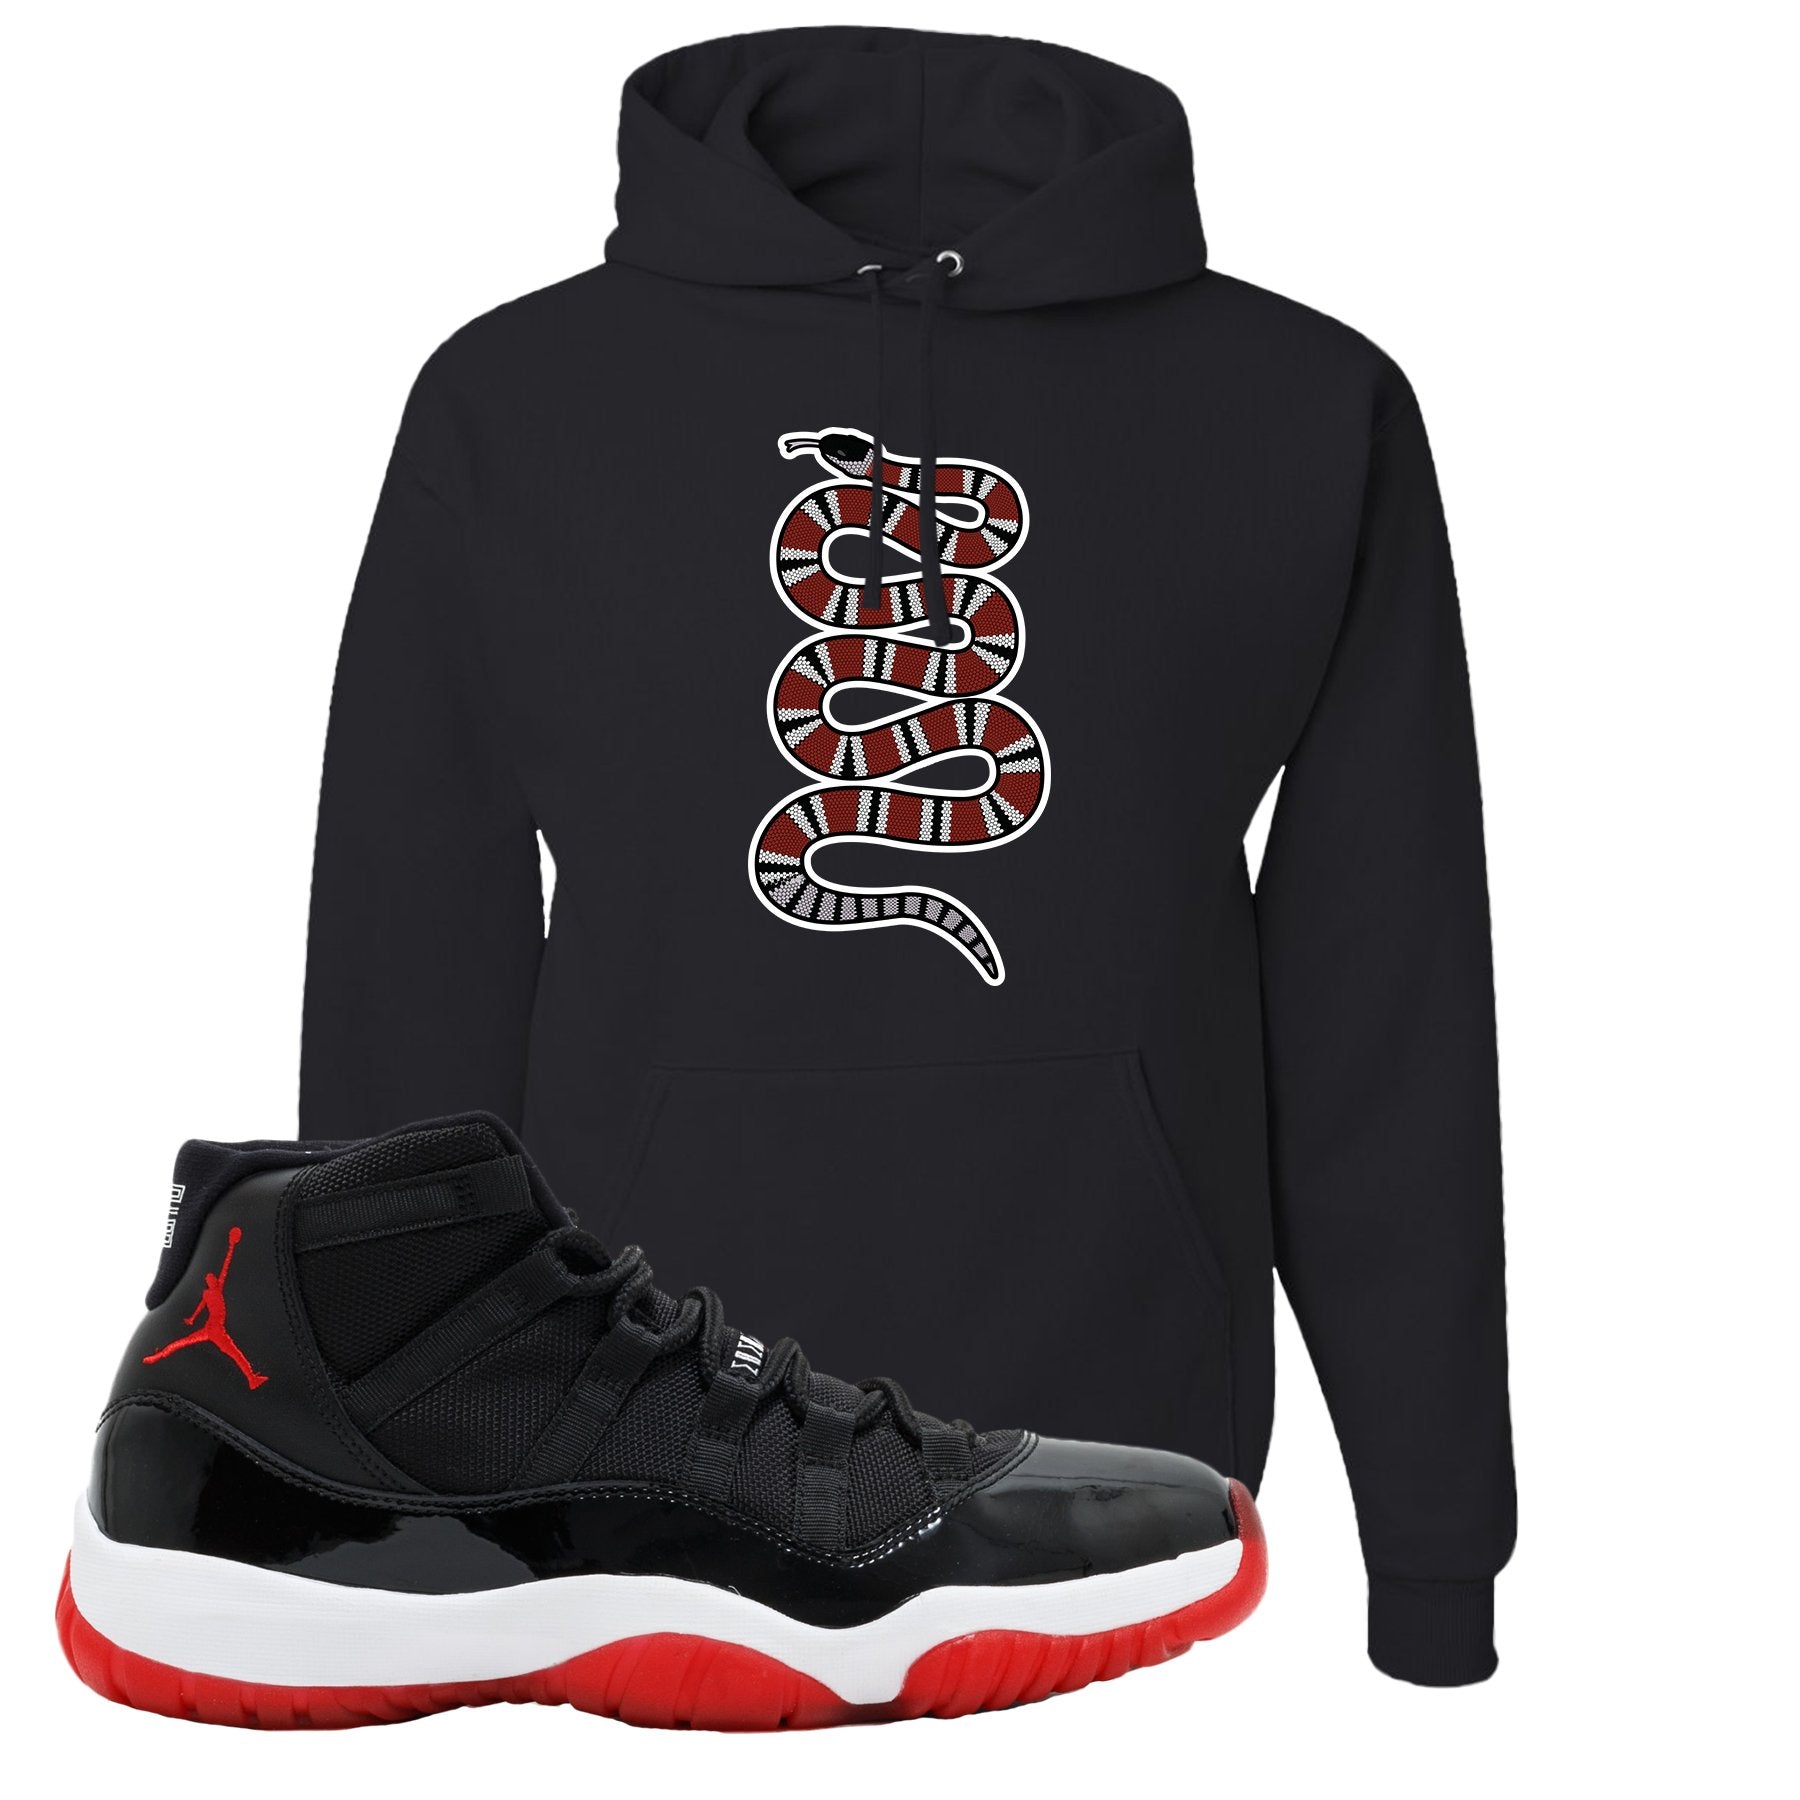 Jordan 11 Bred Coiled Snake Black Sneaker Hook Up Pullover Hoodie